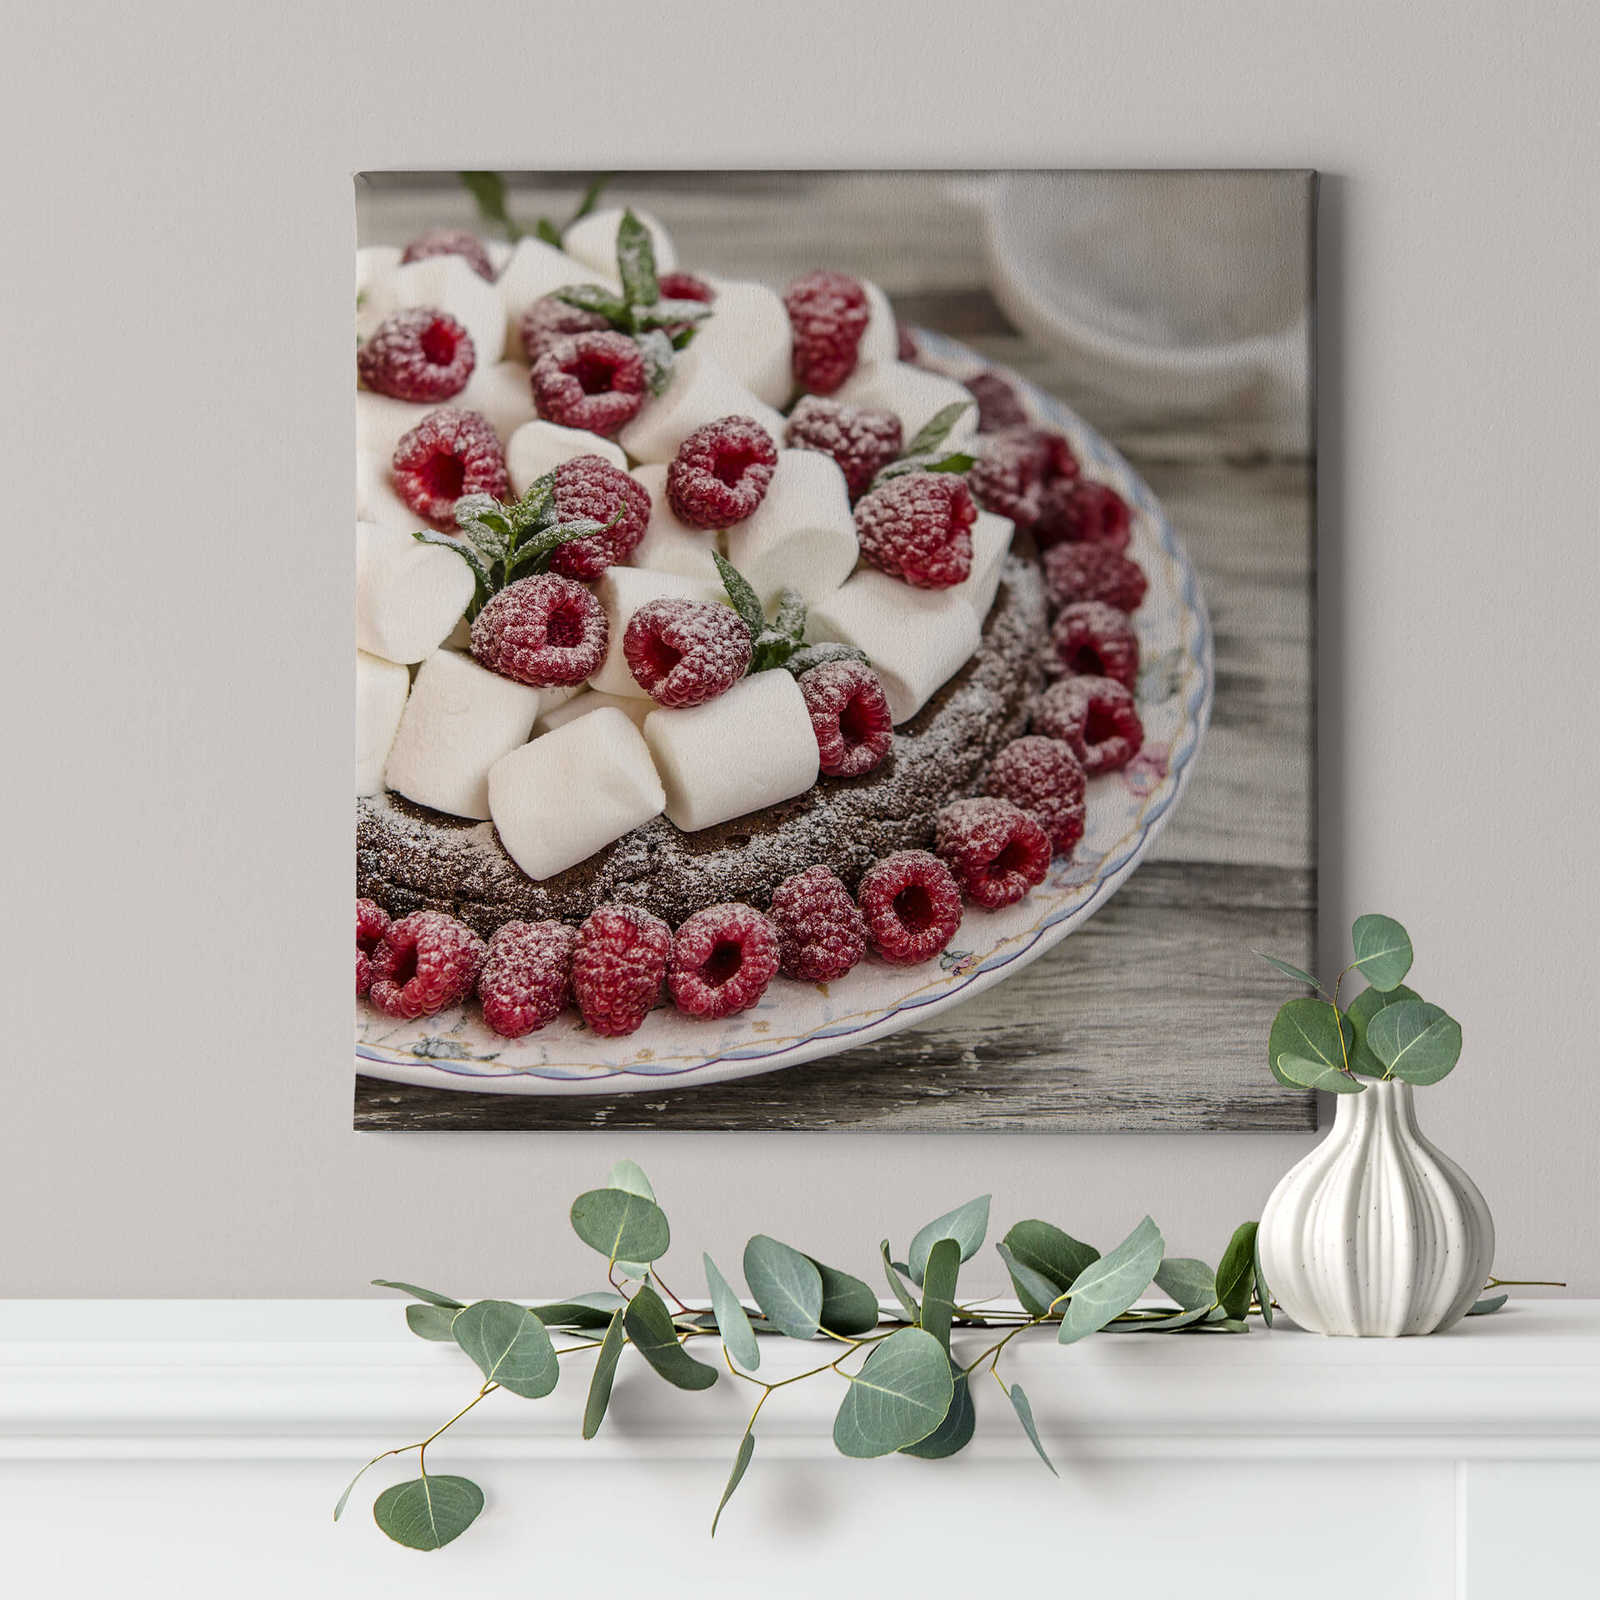             Quadratisches Leinwandbild Torte mit Himbeeren und Süßigkeiten – 0,50 m x 0,50 m
        